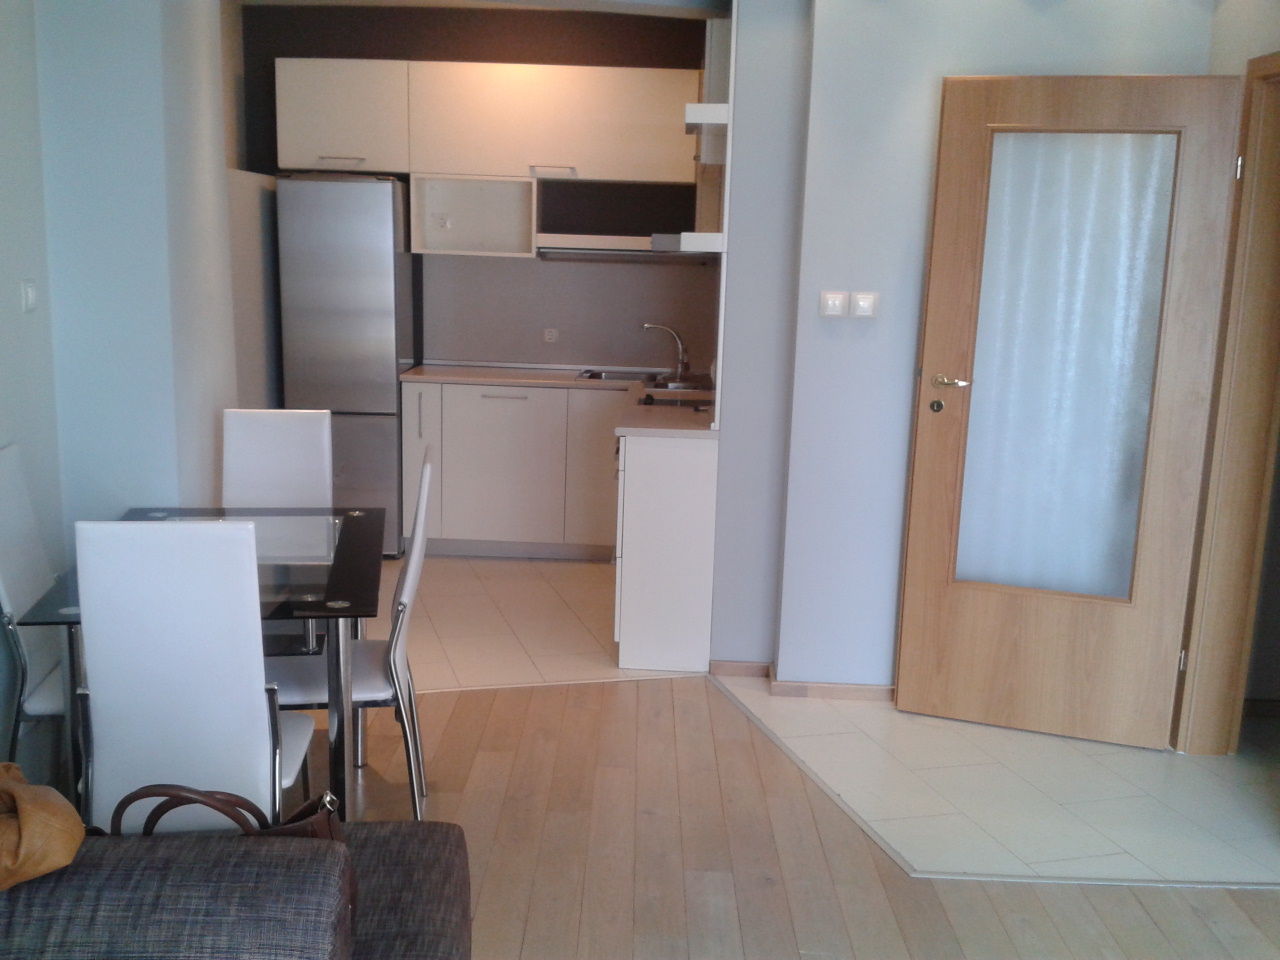 2 стаен апартамент, ж.к. Дианабад, цена 63900 евро- ПРОДАДЕН - image